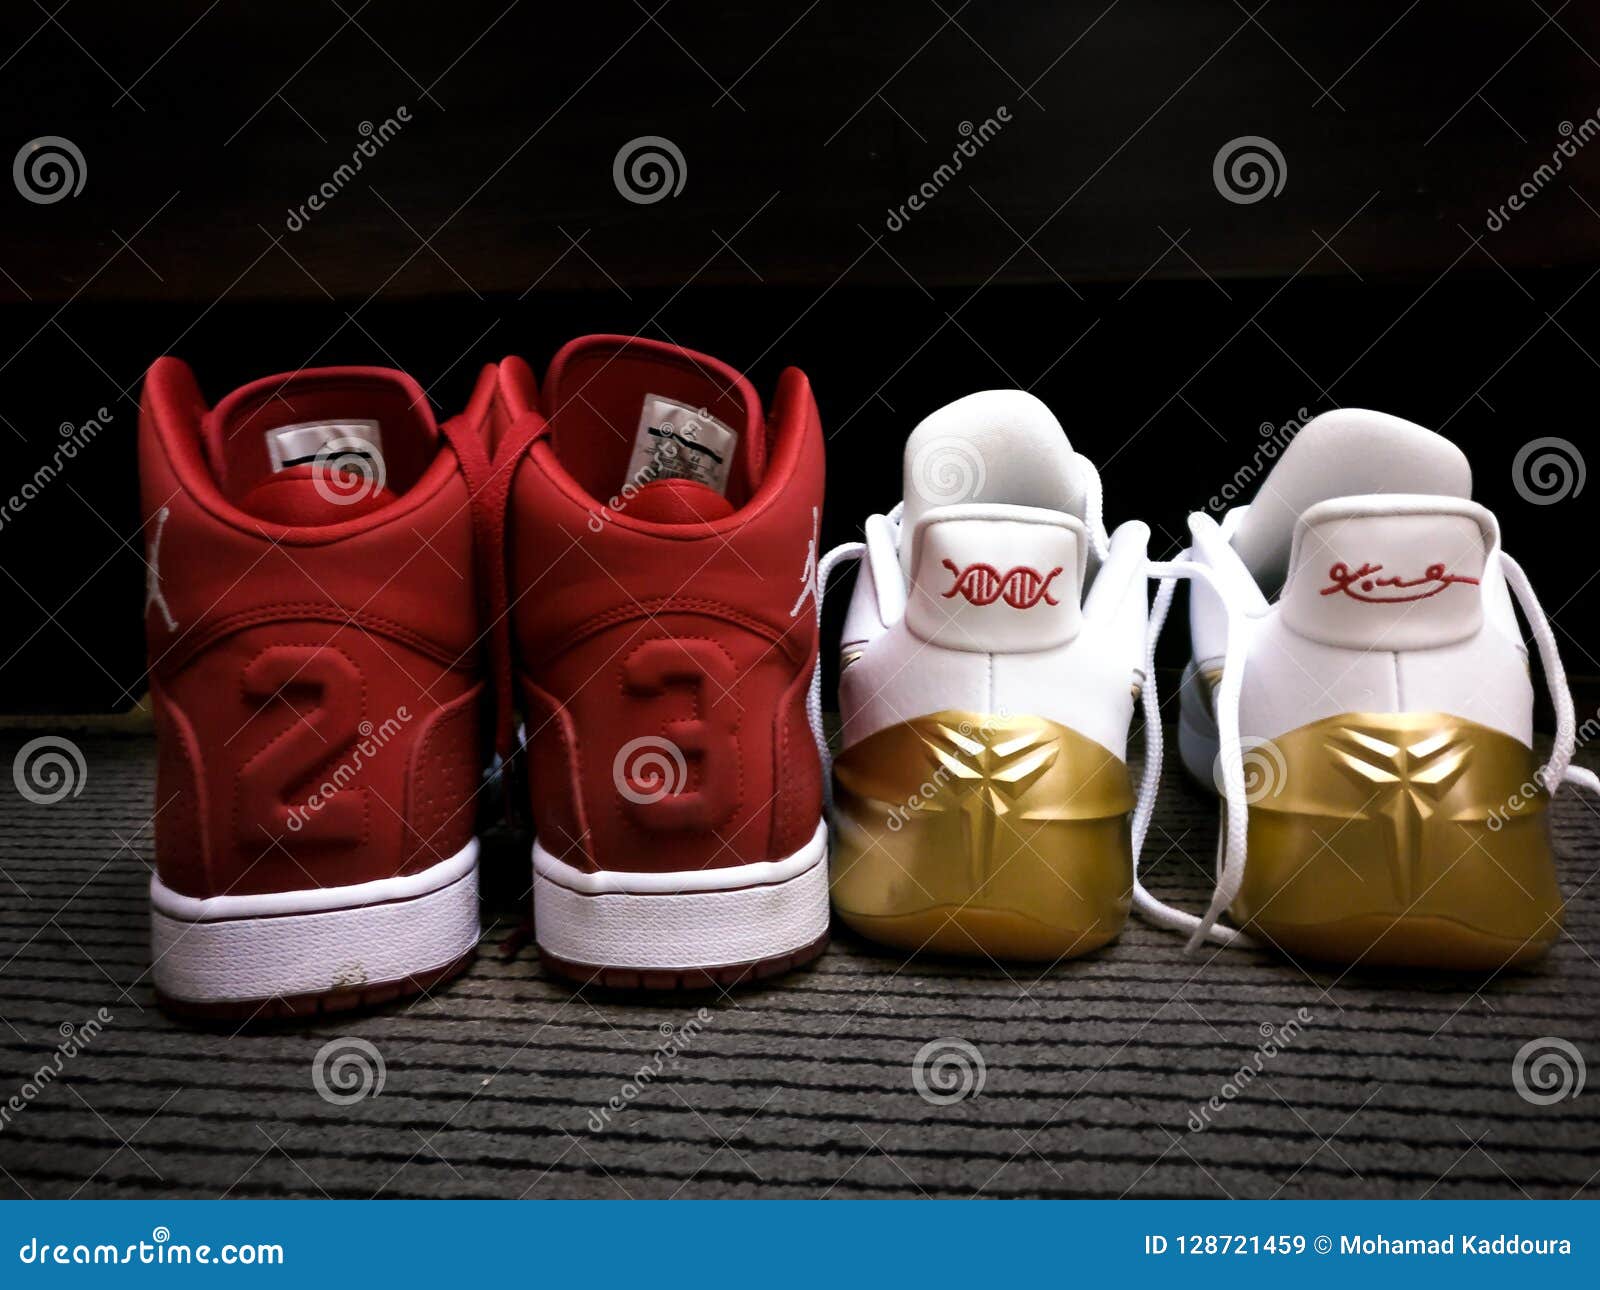 Nike Michael Jordan Roja Y Blanca 23 Zapatillas De Deporte - Mamba Negra Las Zapatillas De Deporte Del Nike De Kobe Bryant Imagen de archivo - Imagen de zapatillas, modelo: 128721459